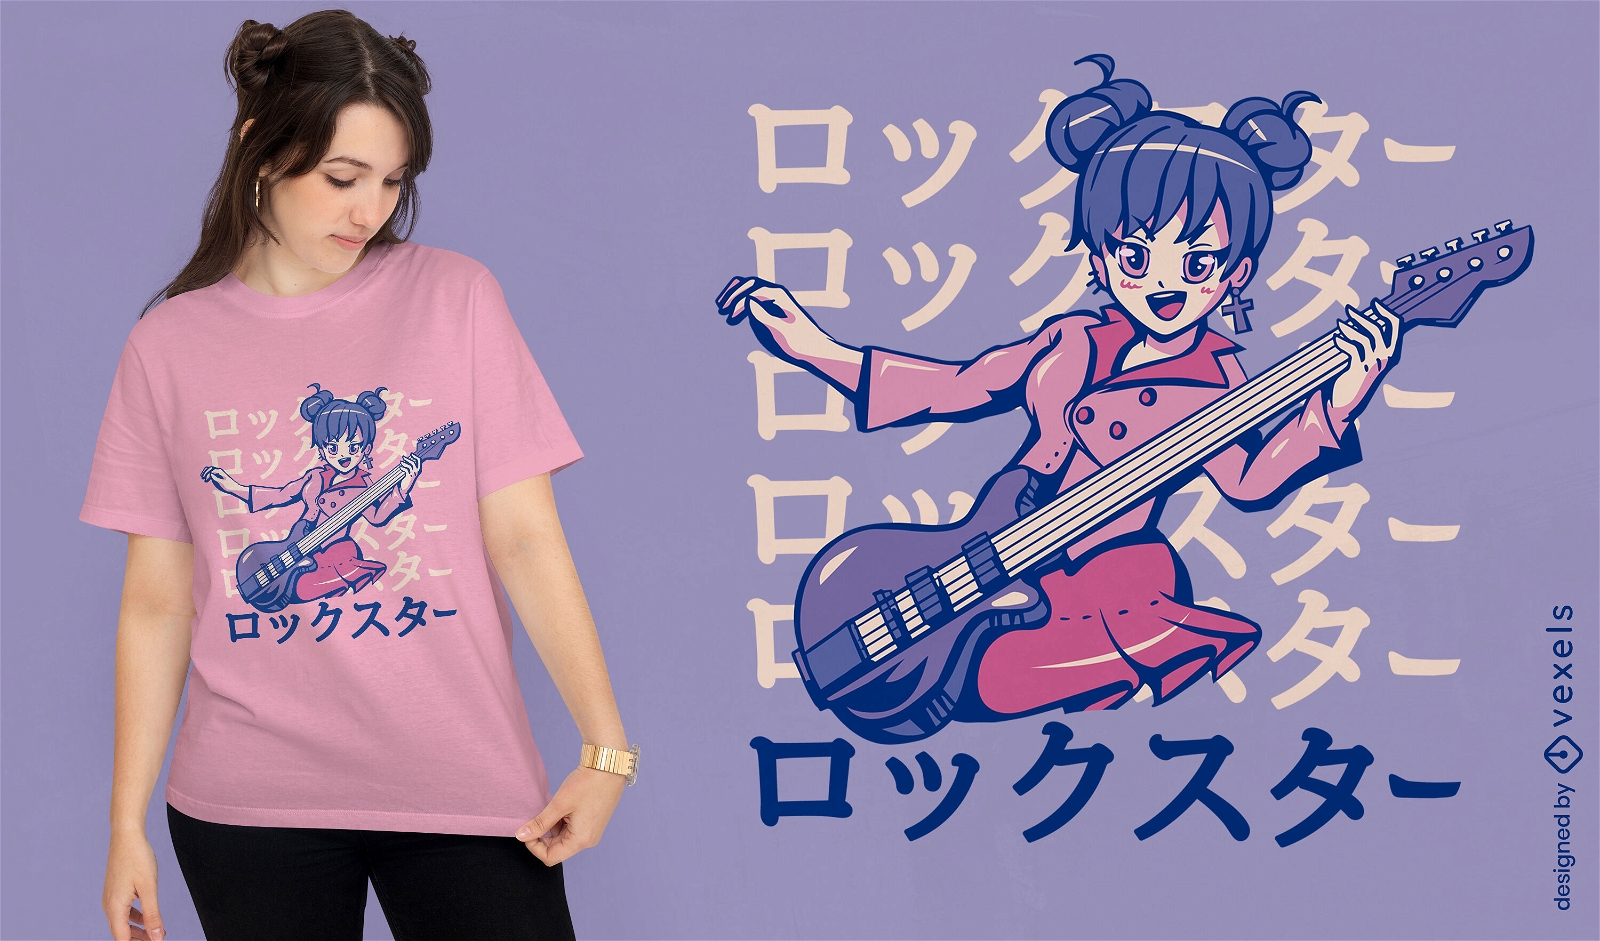 Bass-Anime-M?dchen-Musik-T-Shirt-Design